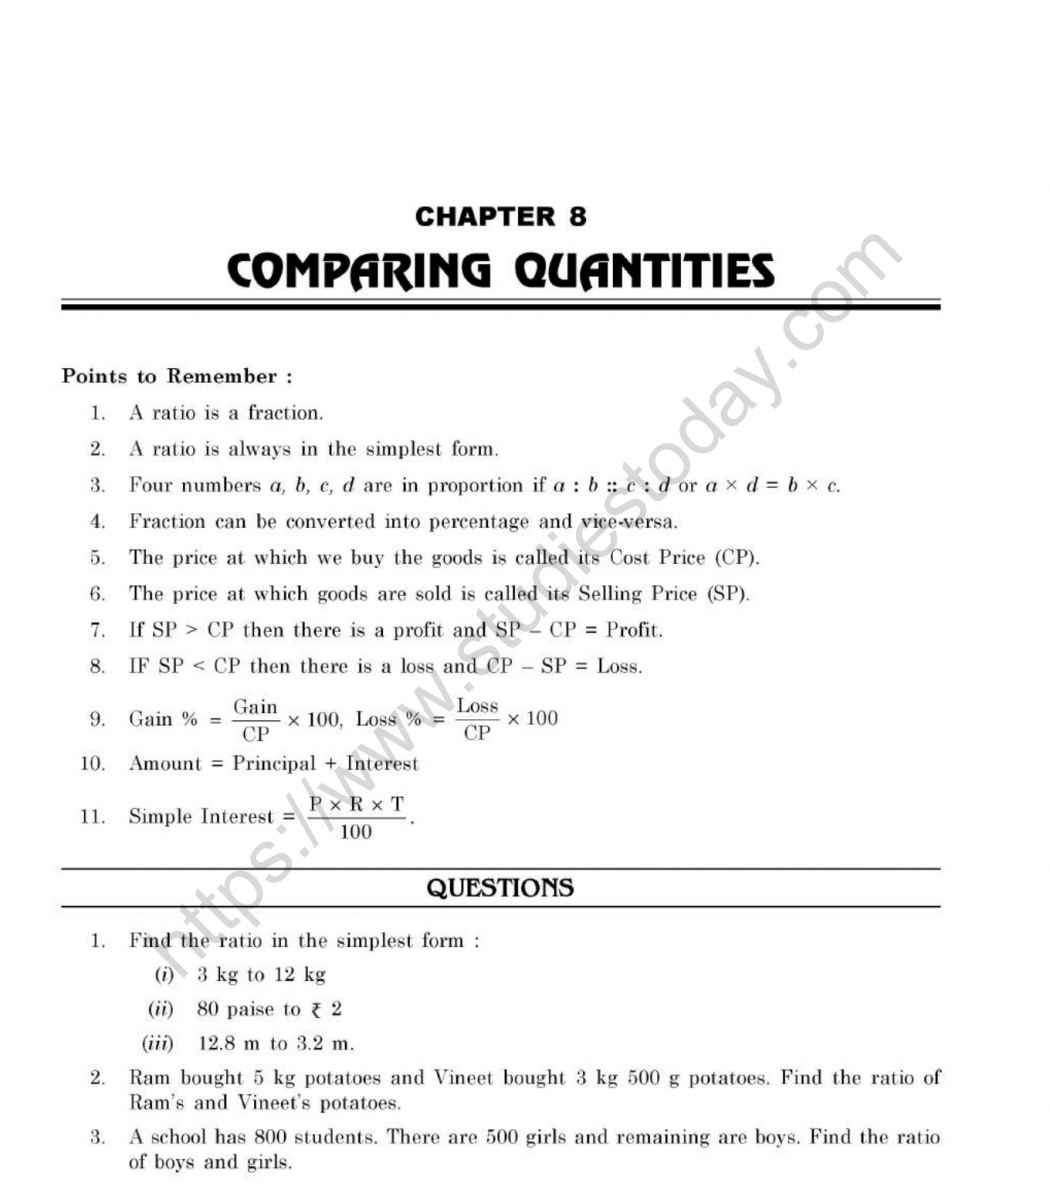 Mental Math Worksheet For Class 3 Cbse Class 7 Mental Maths Comparing Quantities Worksheet